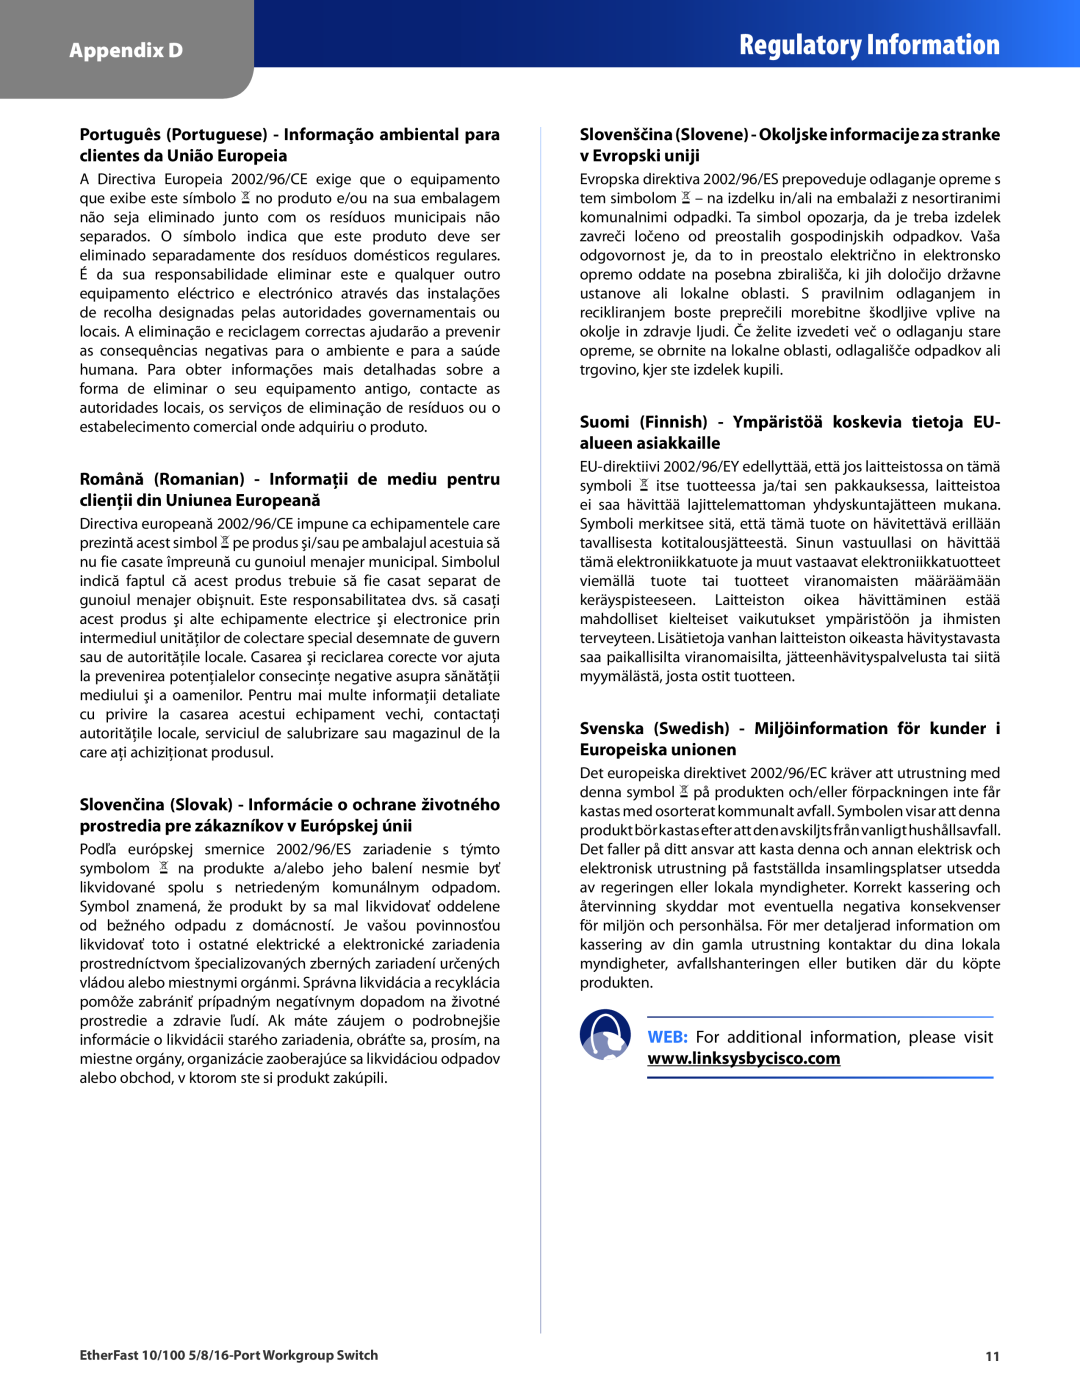 Linksys EZXS16W Regulatory Information, Appendix D, Suomi Finnish - Ympäristöä koskevia tietoja EU- alueen asiakkaille 